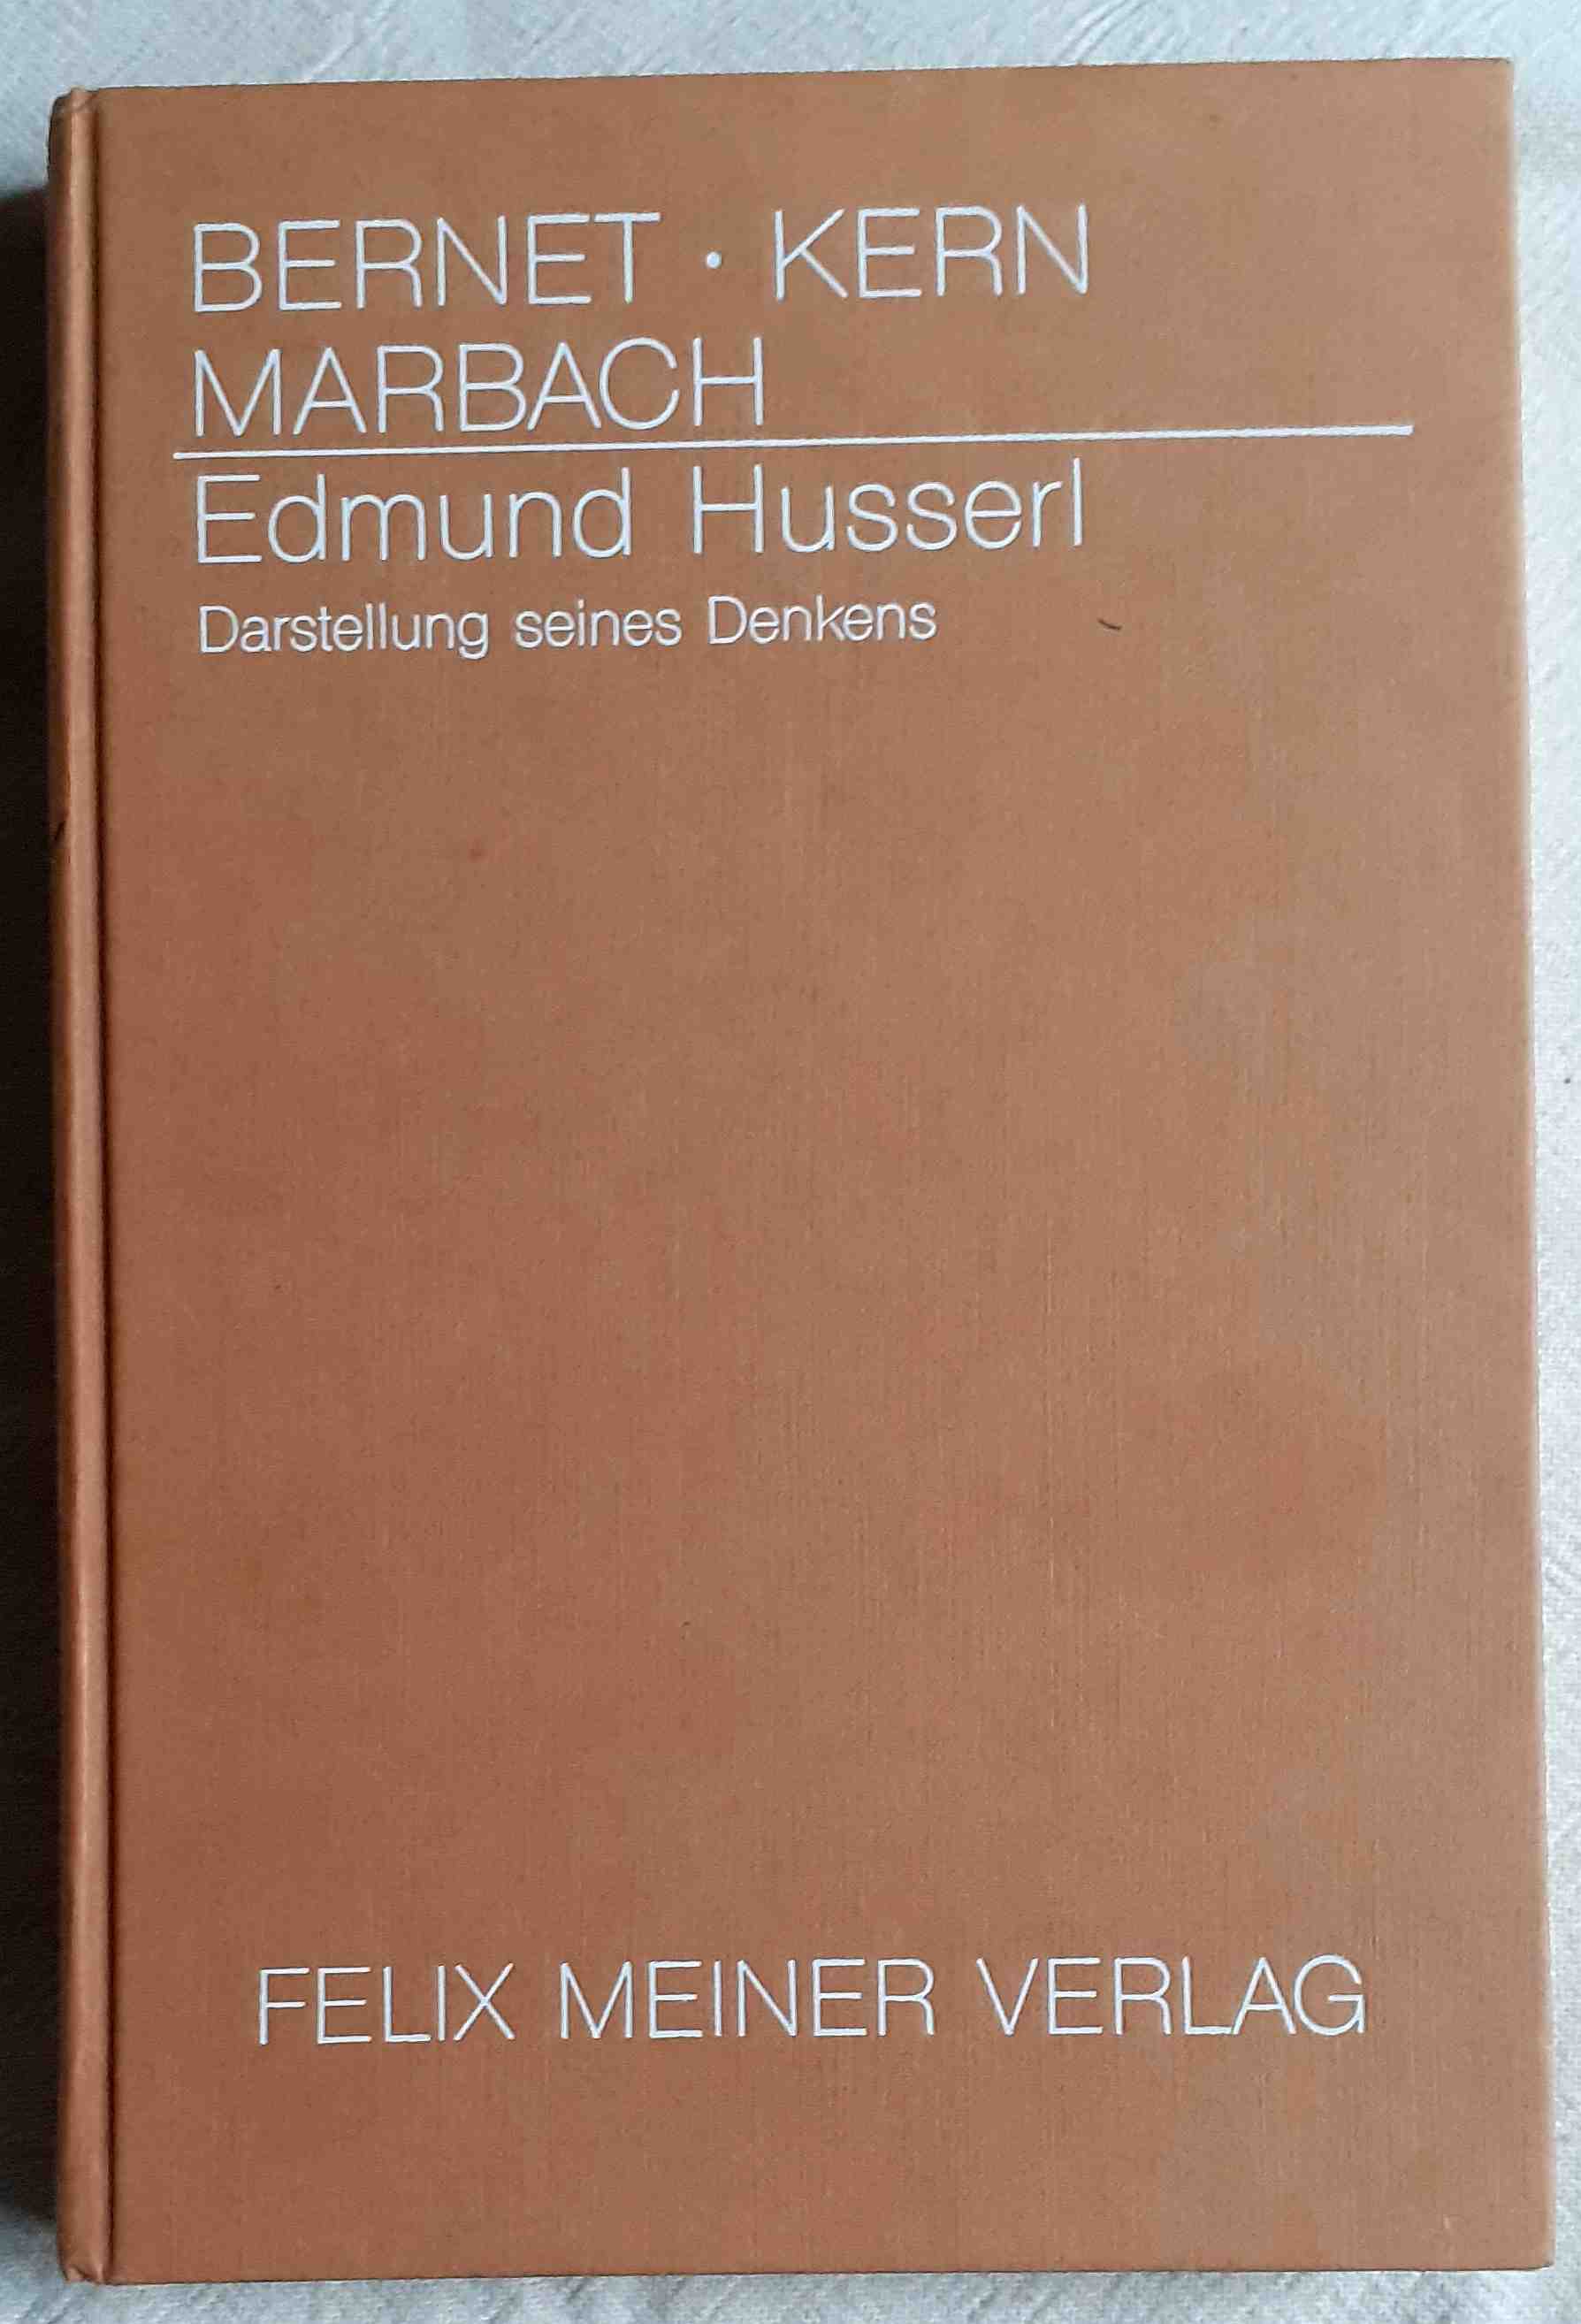 Edmund Husserl : Darstellung seines Denkens - Bernet, Rudolf ; Kern, Iso ; Marbach, Eduard